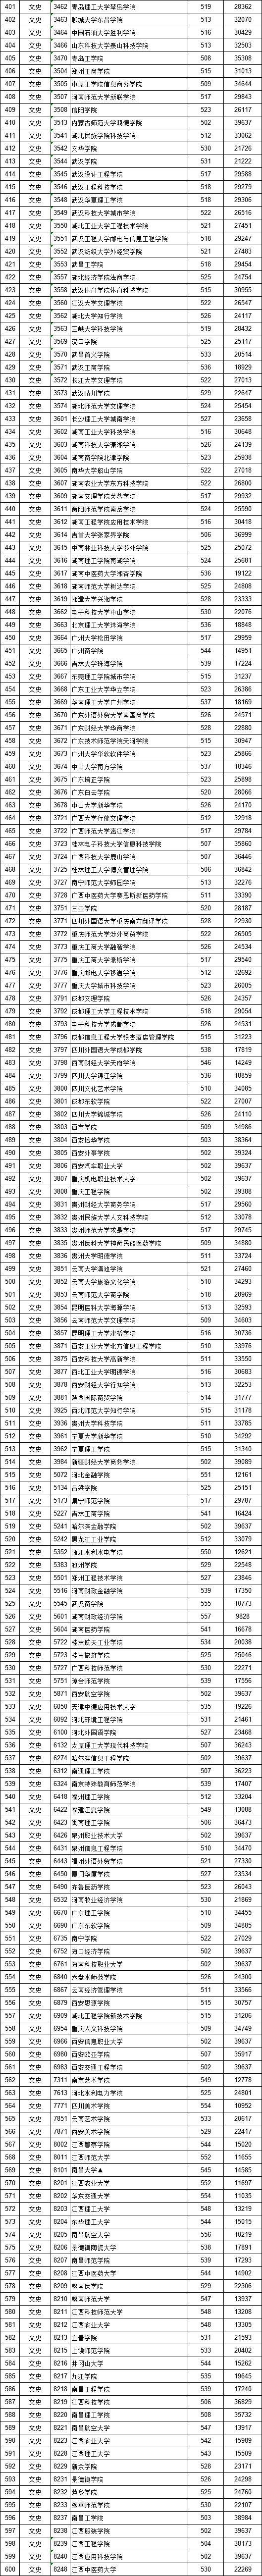 2020江西公办本科排名_2020江西省重点大学排名出炉,来看看是哪几所高校